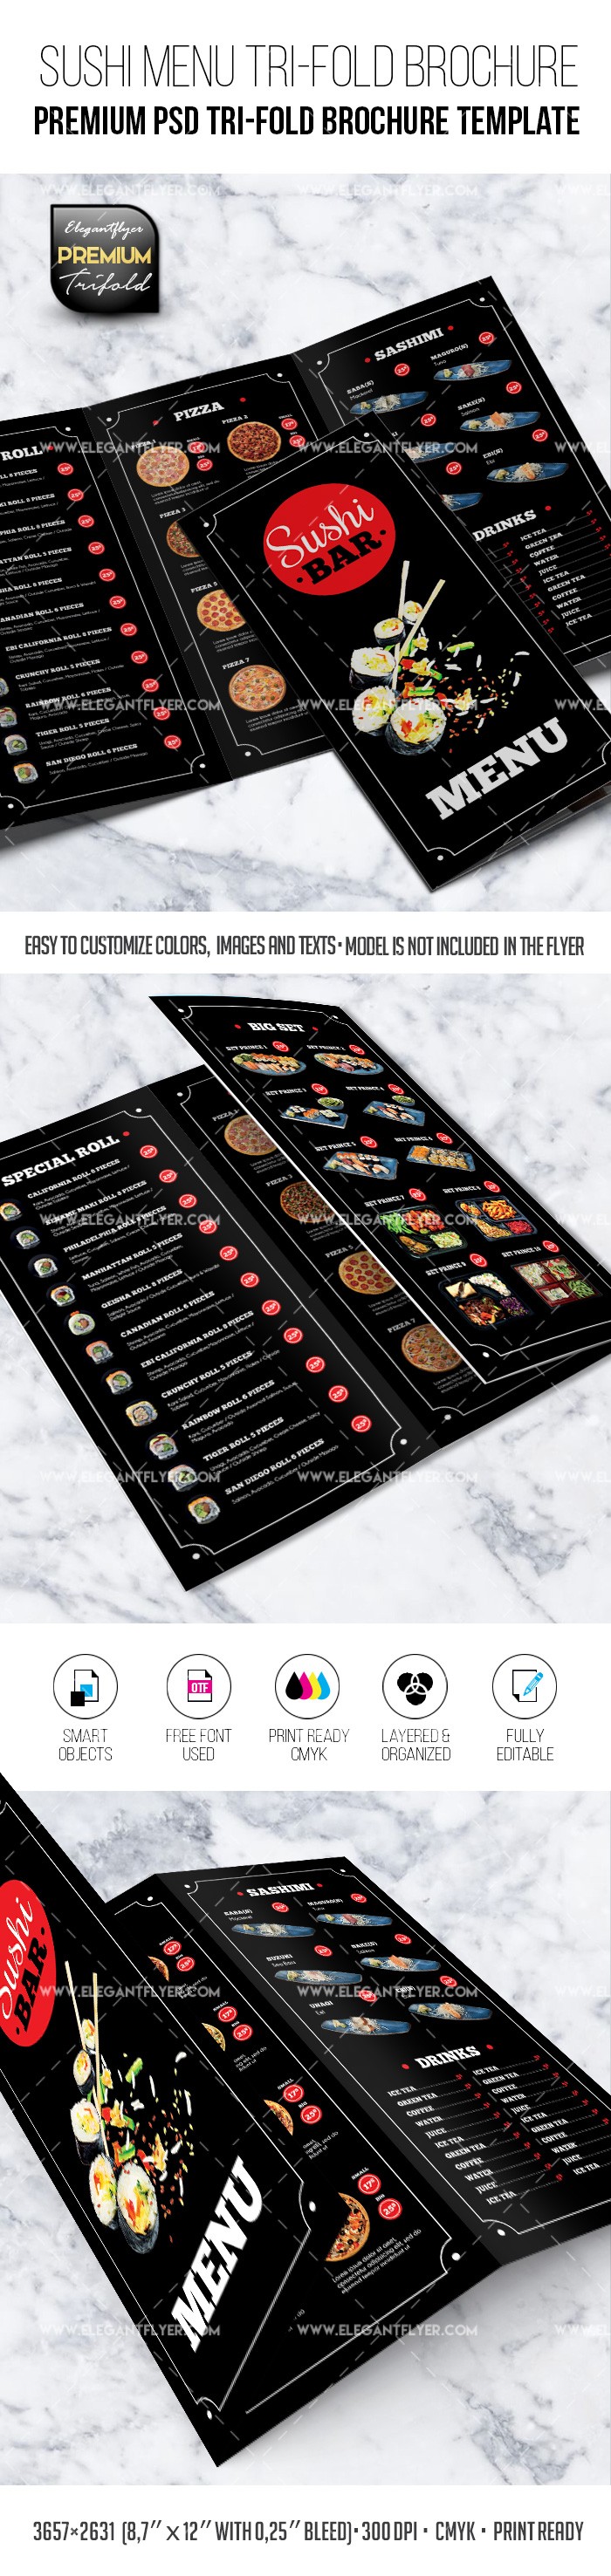 Menu restauracji sushi - szablon premium broszury trójstronnej PSD. by ElegantFlyer